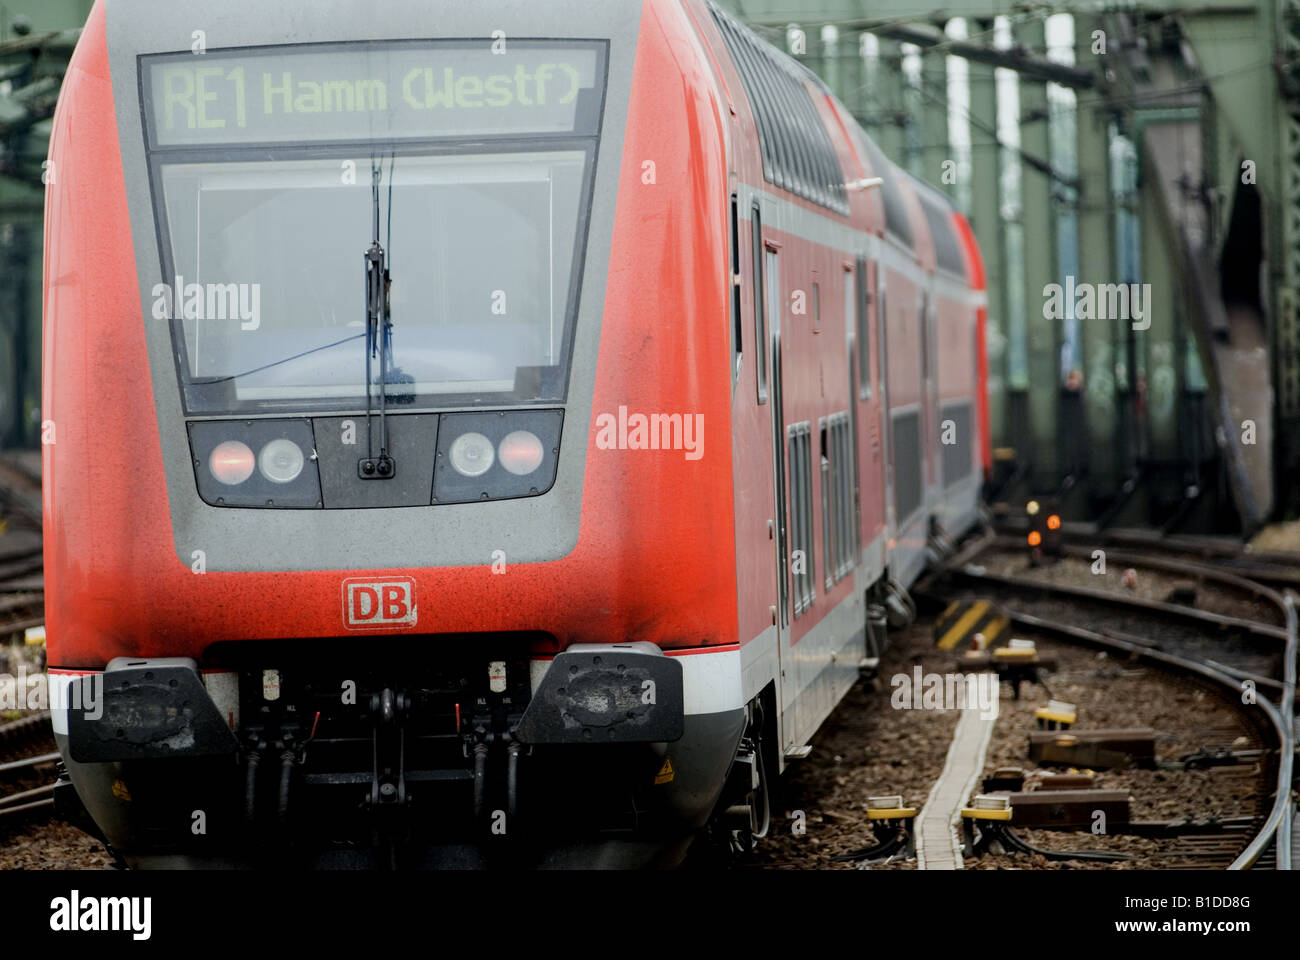 Deutsche Bahn-Doppeldecker-Regional-Express-Zug nach Hamm Köln,  Nordrhein-Westfalen, Deutschland zu verlassen Stockfotografie - Alamy